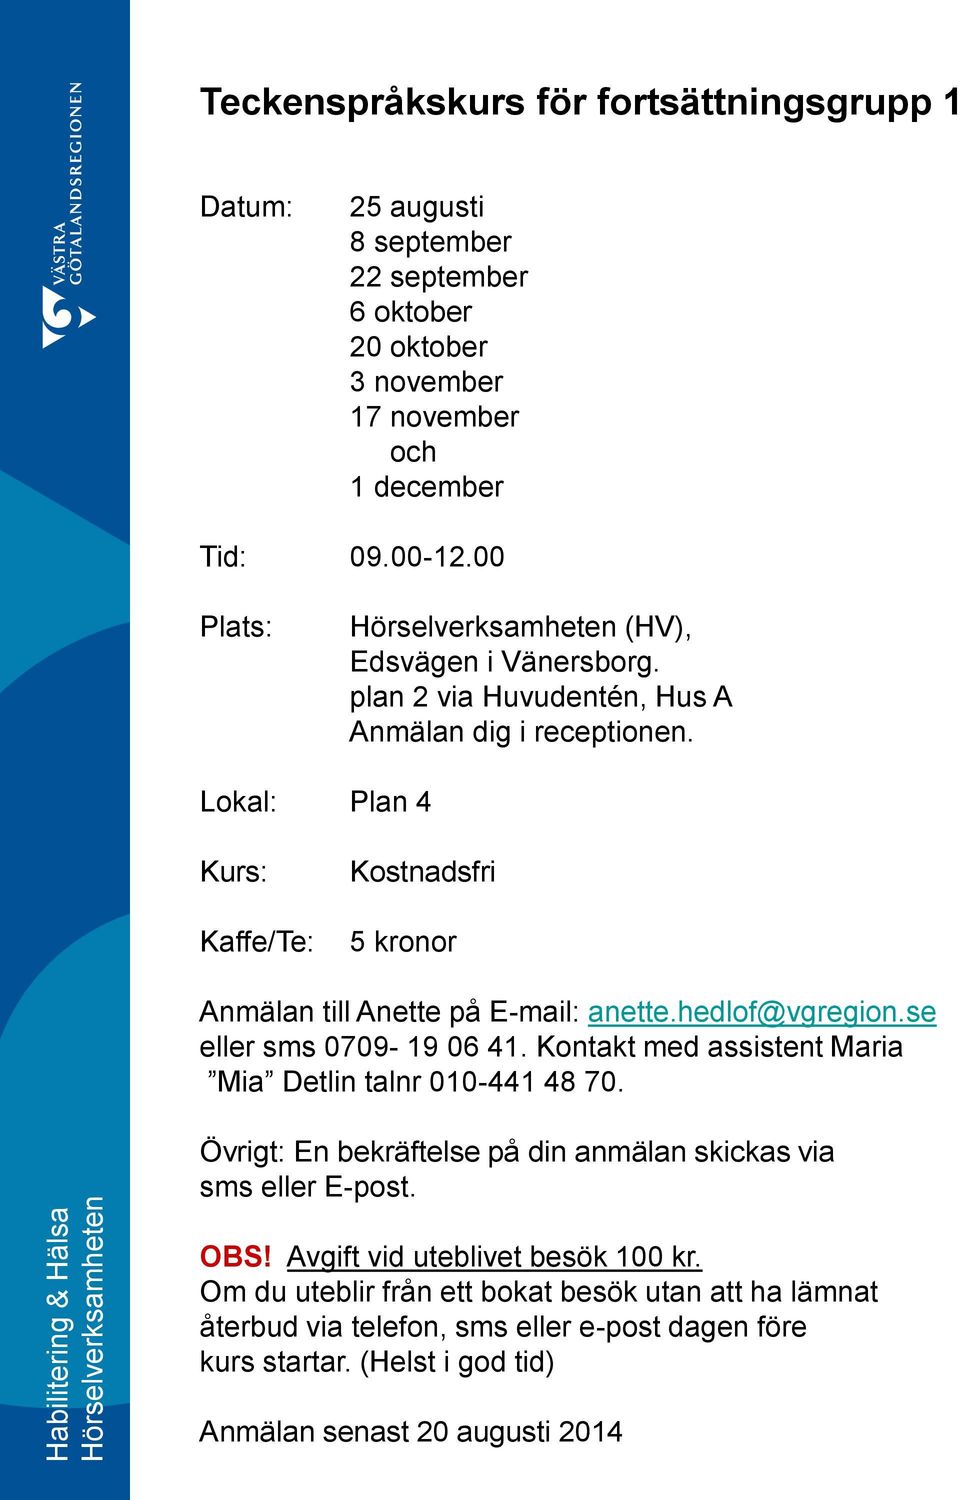 Lokal: Plan 4 Kurs: Kaffe/Te: Kostnadsfri 5 kronor Anmälan till Anette på E-mail: anette.hedlof@vgregion.se eller sms 0709-19 06 41.